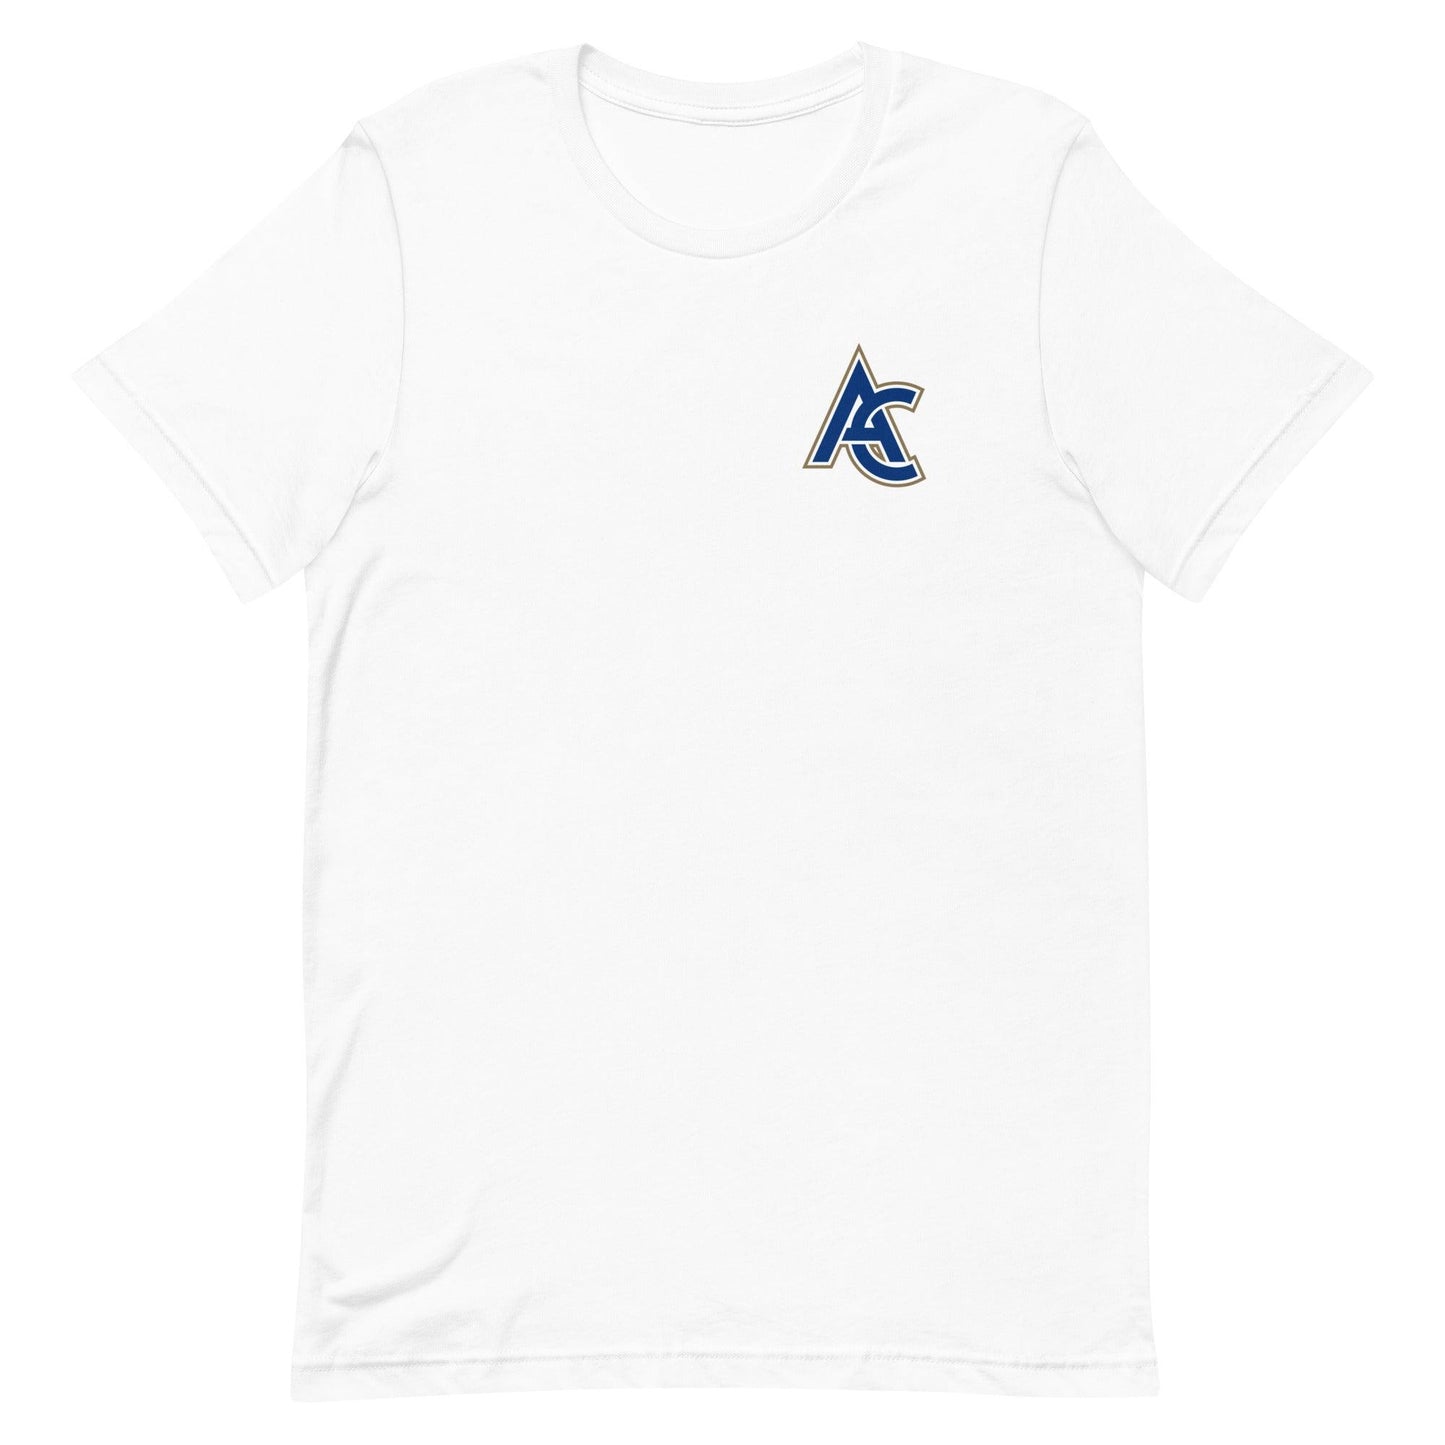 Austin Cox "Elite" t-shirt - Fan Arch